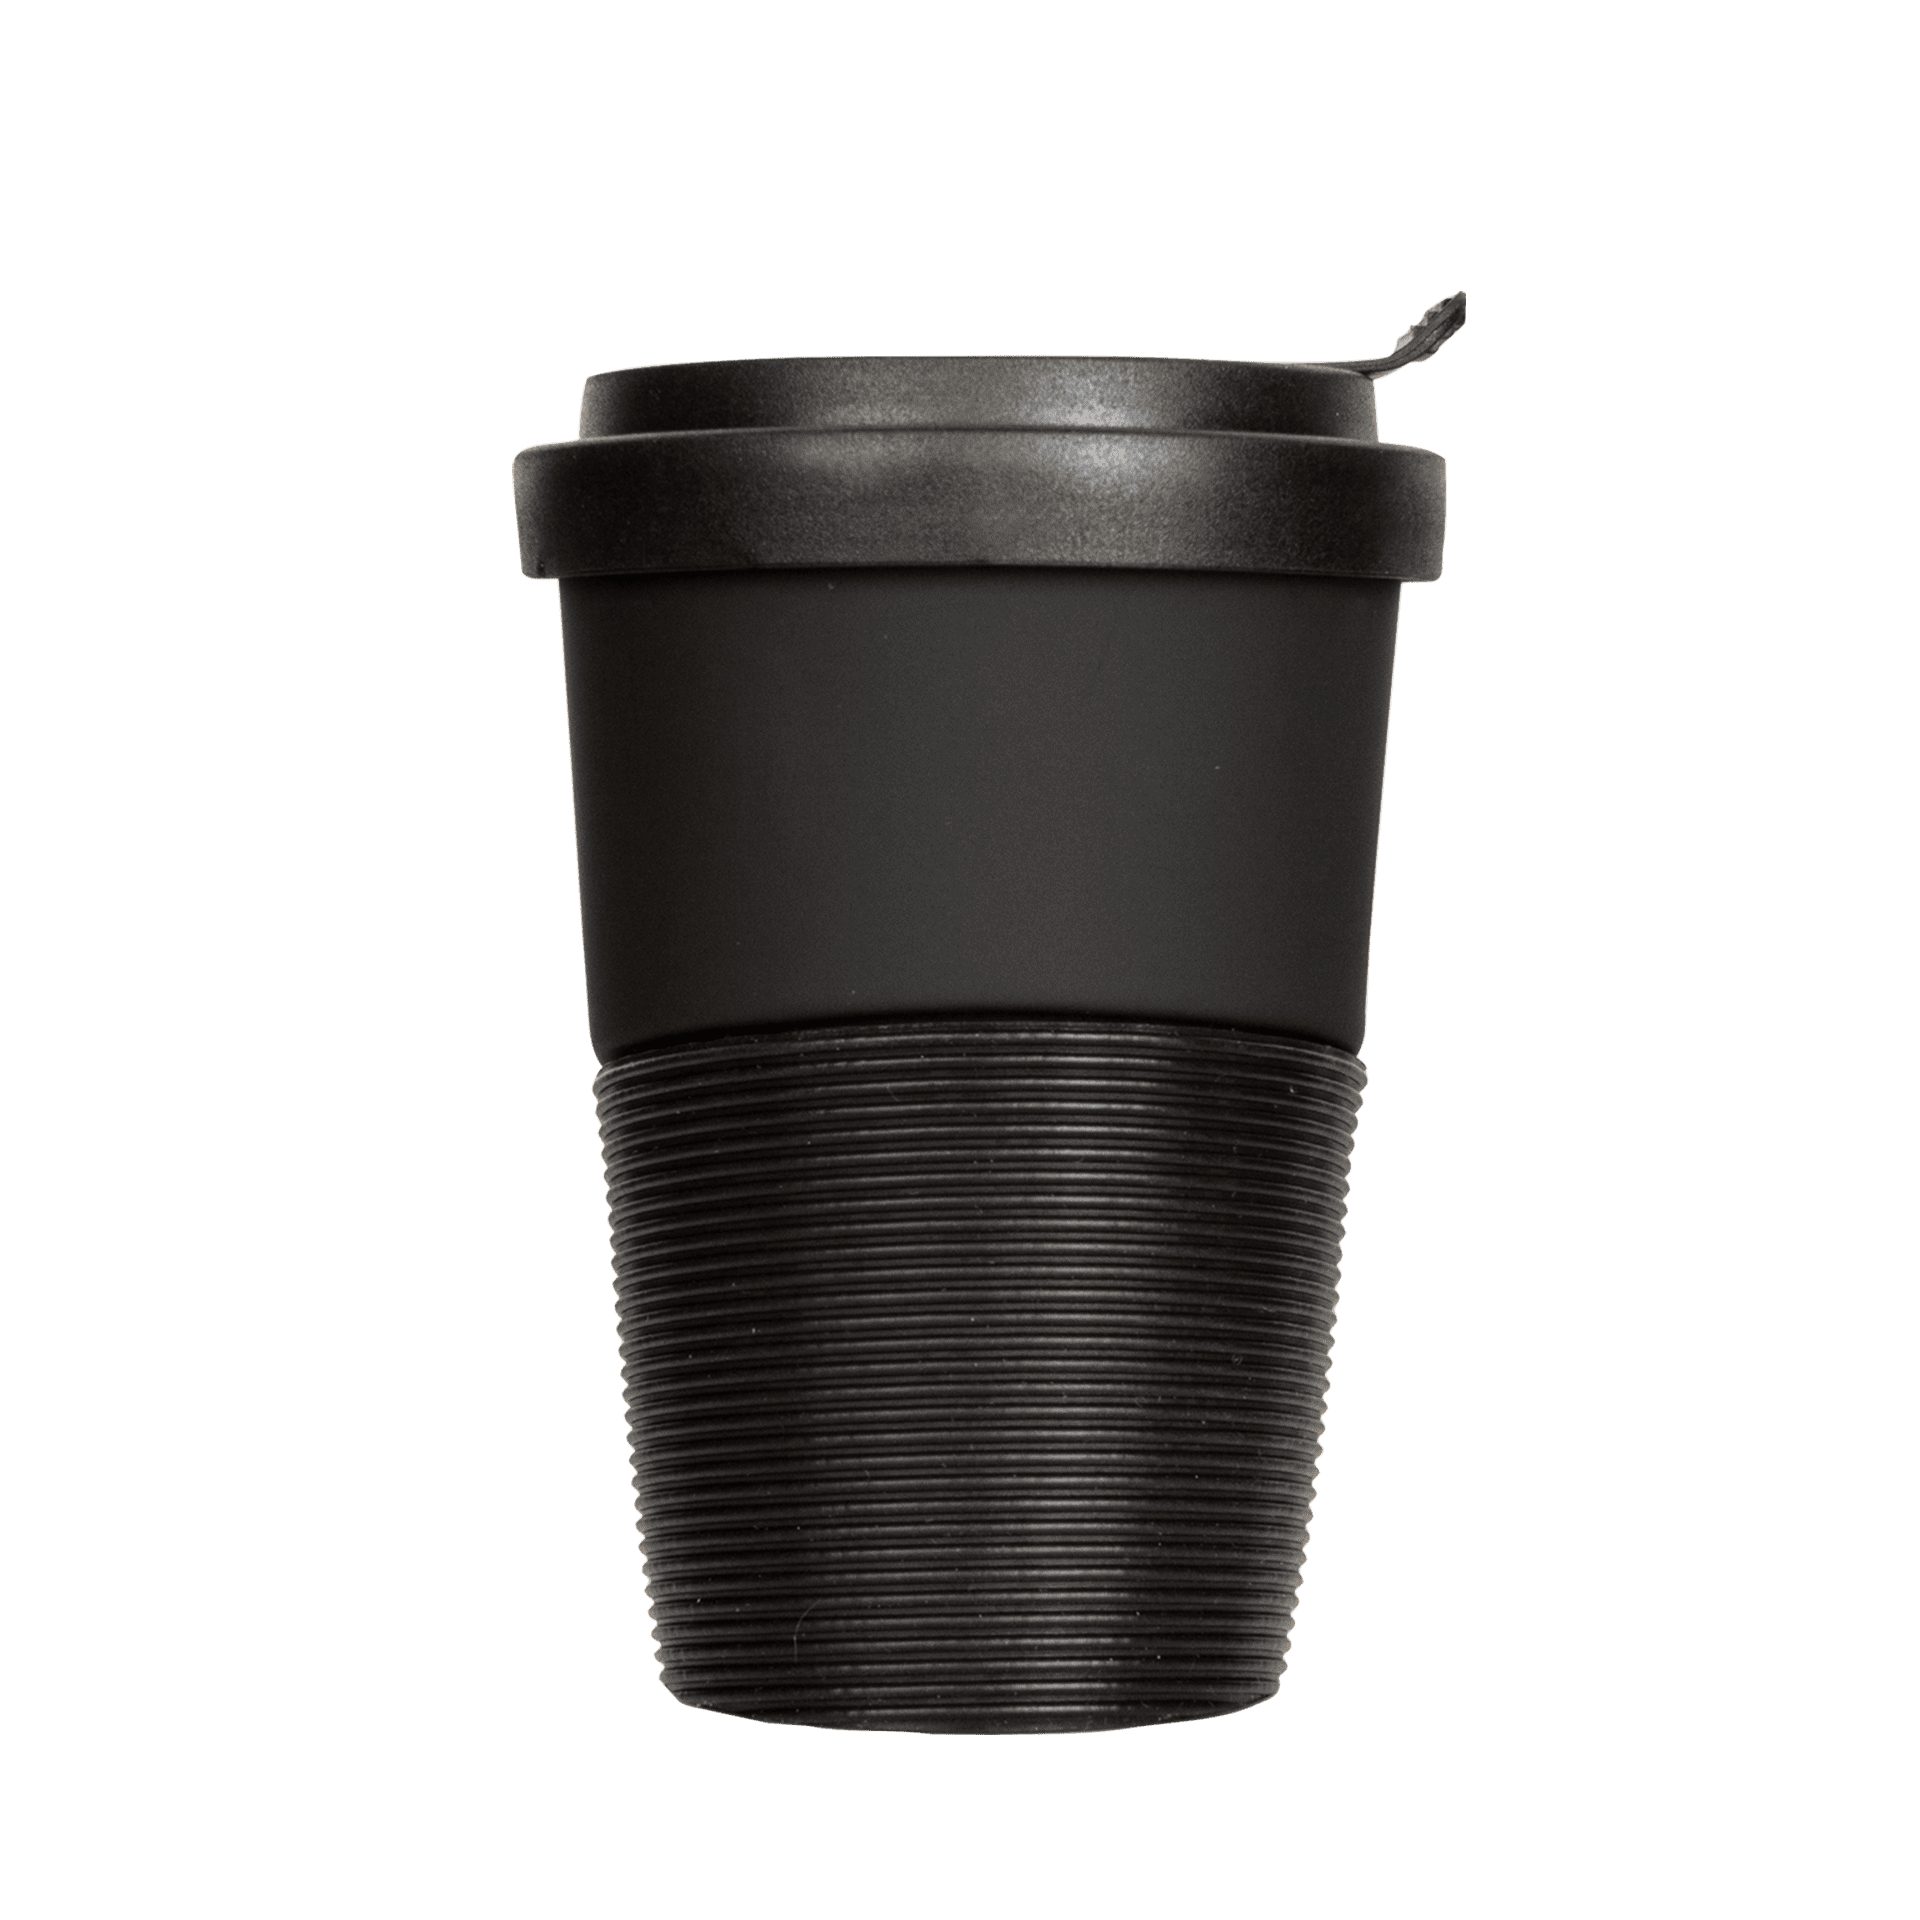 Black Trinkdeckel, klimaneutral Wave Becher Porzellan, Diamond Manufaktur 100% Coffee-to-go-Becher spülmaschinengeeignet, auslaufsicher, + Mahlwerck